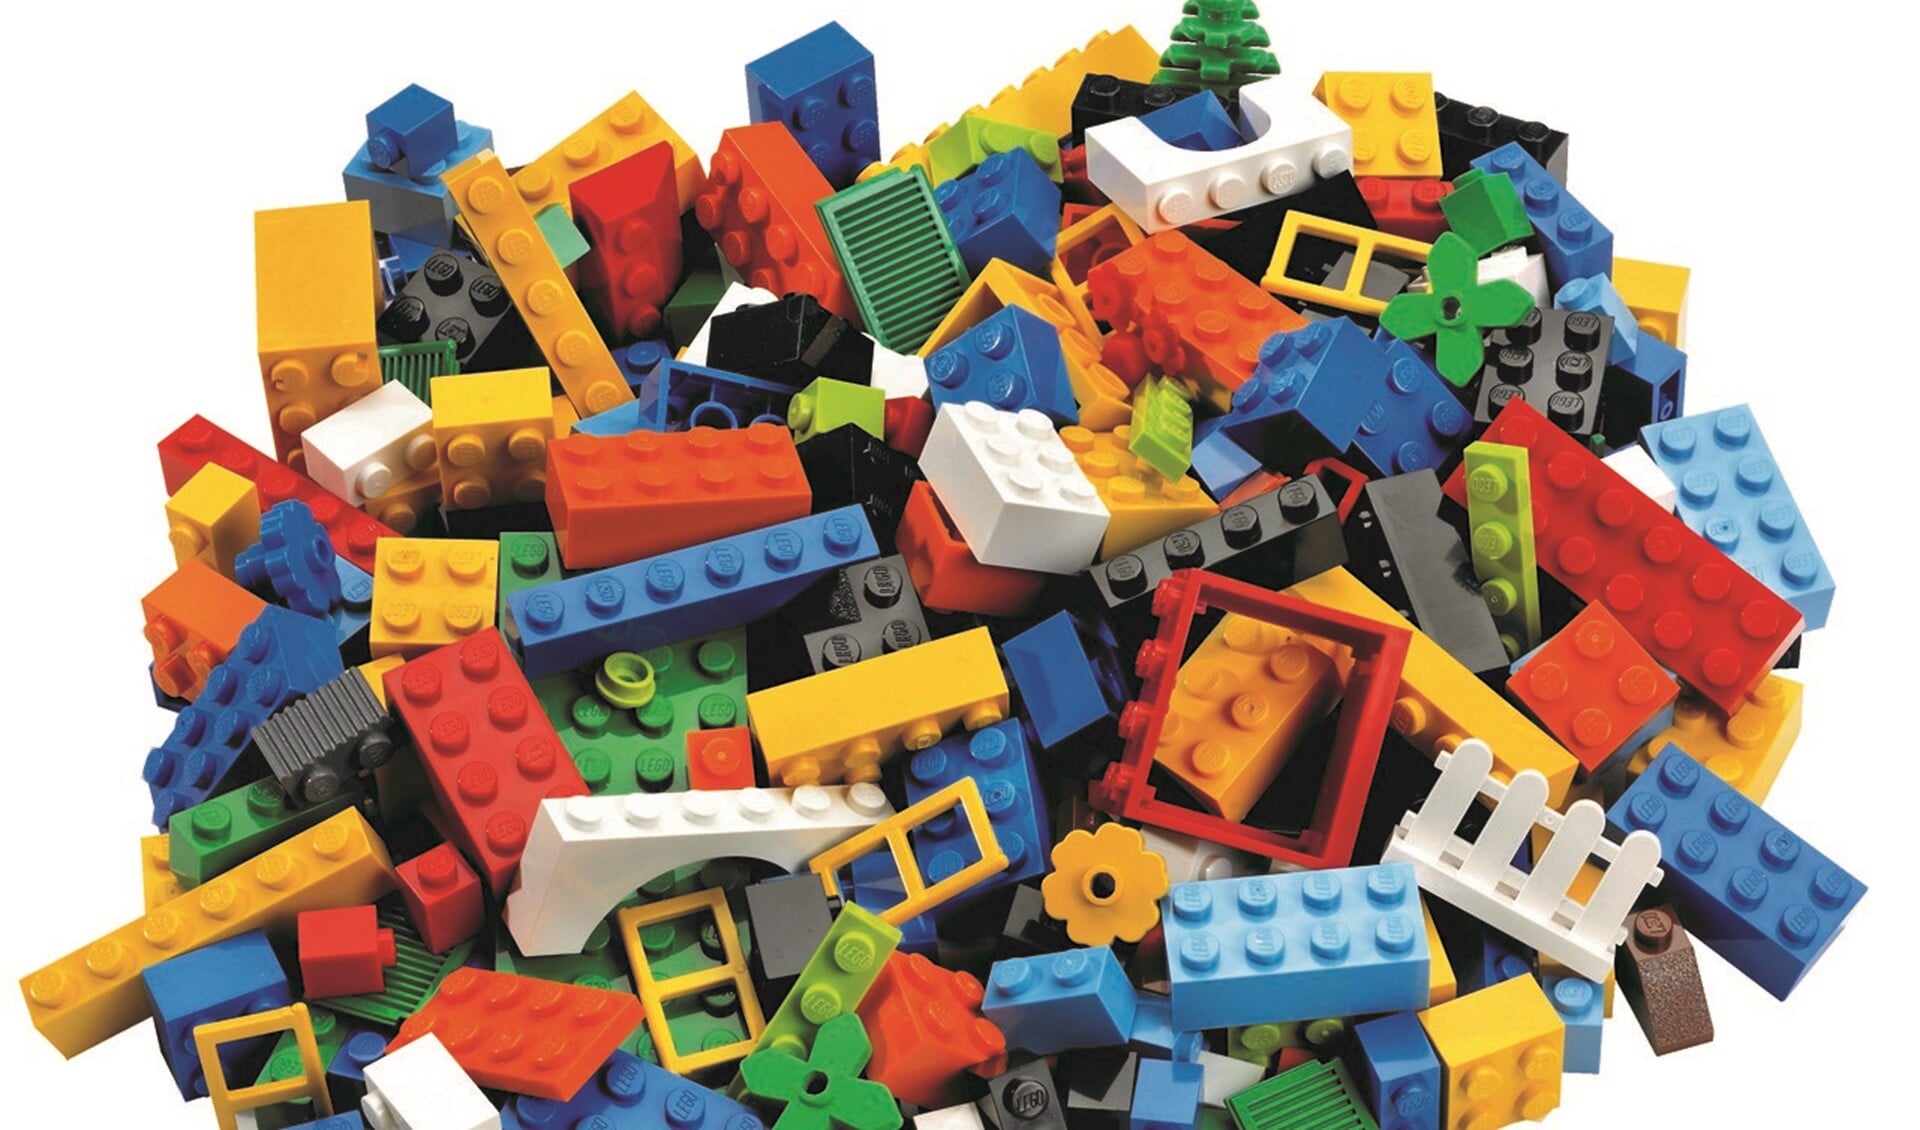 Spelling De volgende Riet Bouwen met LEGO in de Bieb in Ouddorp en Middelharnis - Adverteren Goeree  Overflakkee | Groot Goeree Overflakkee | Krant en Online